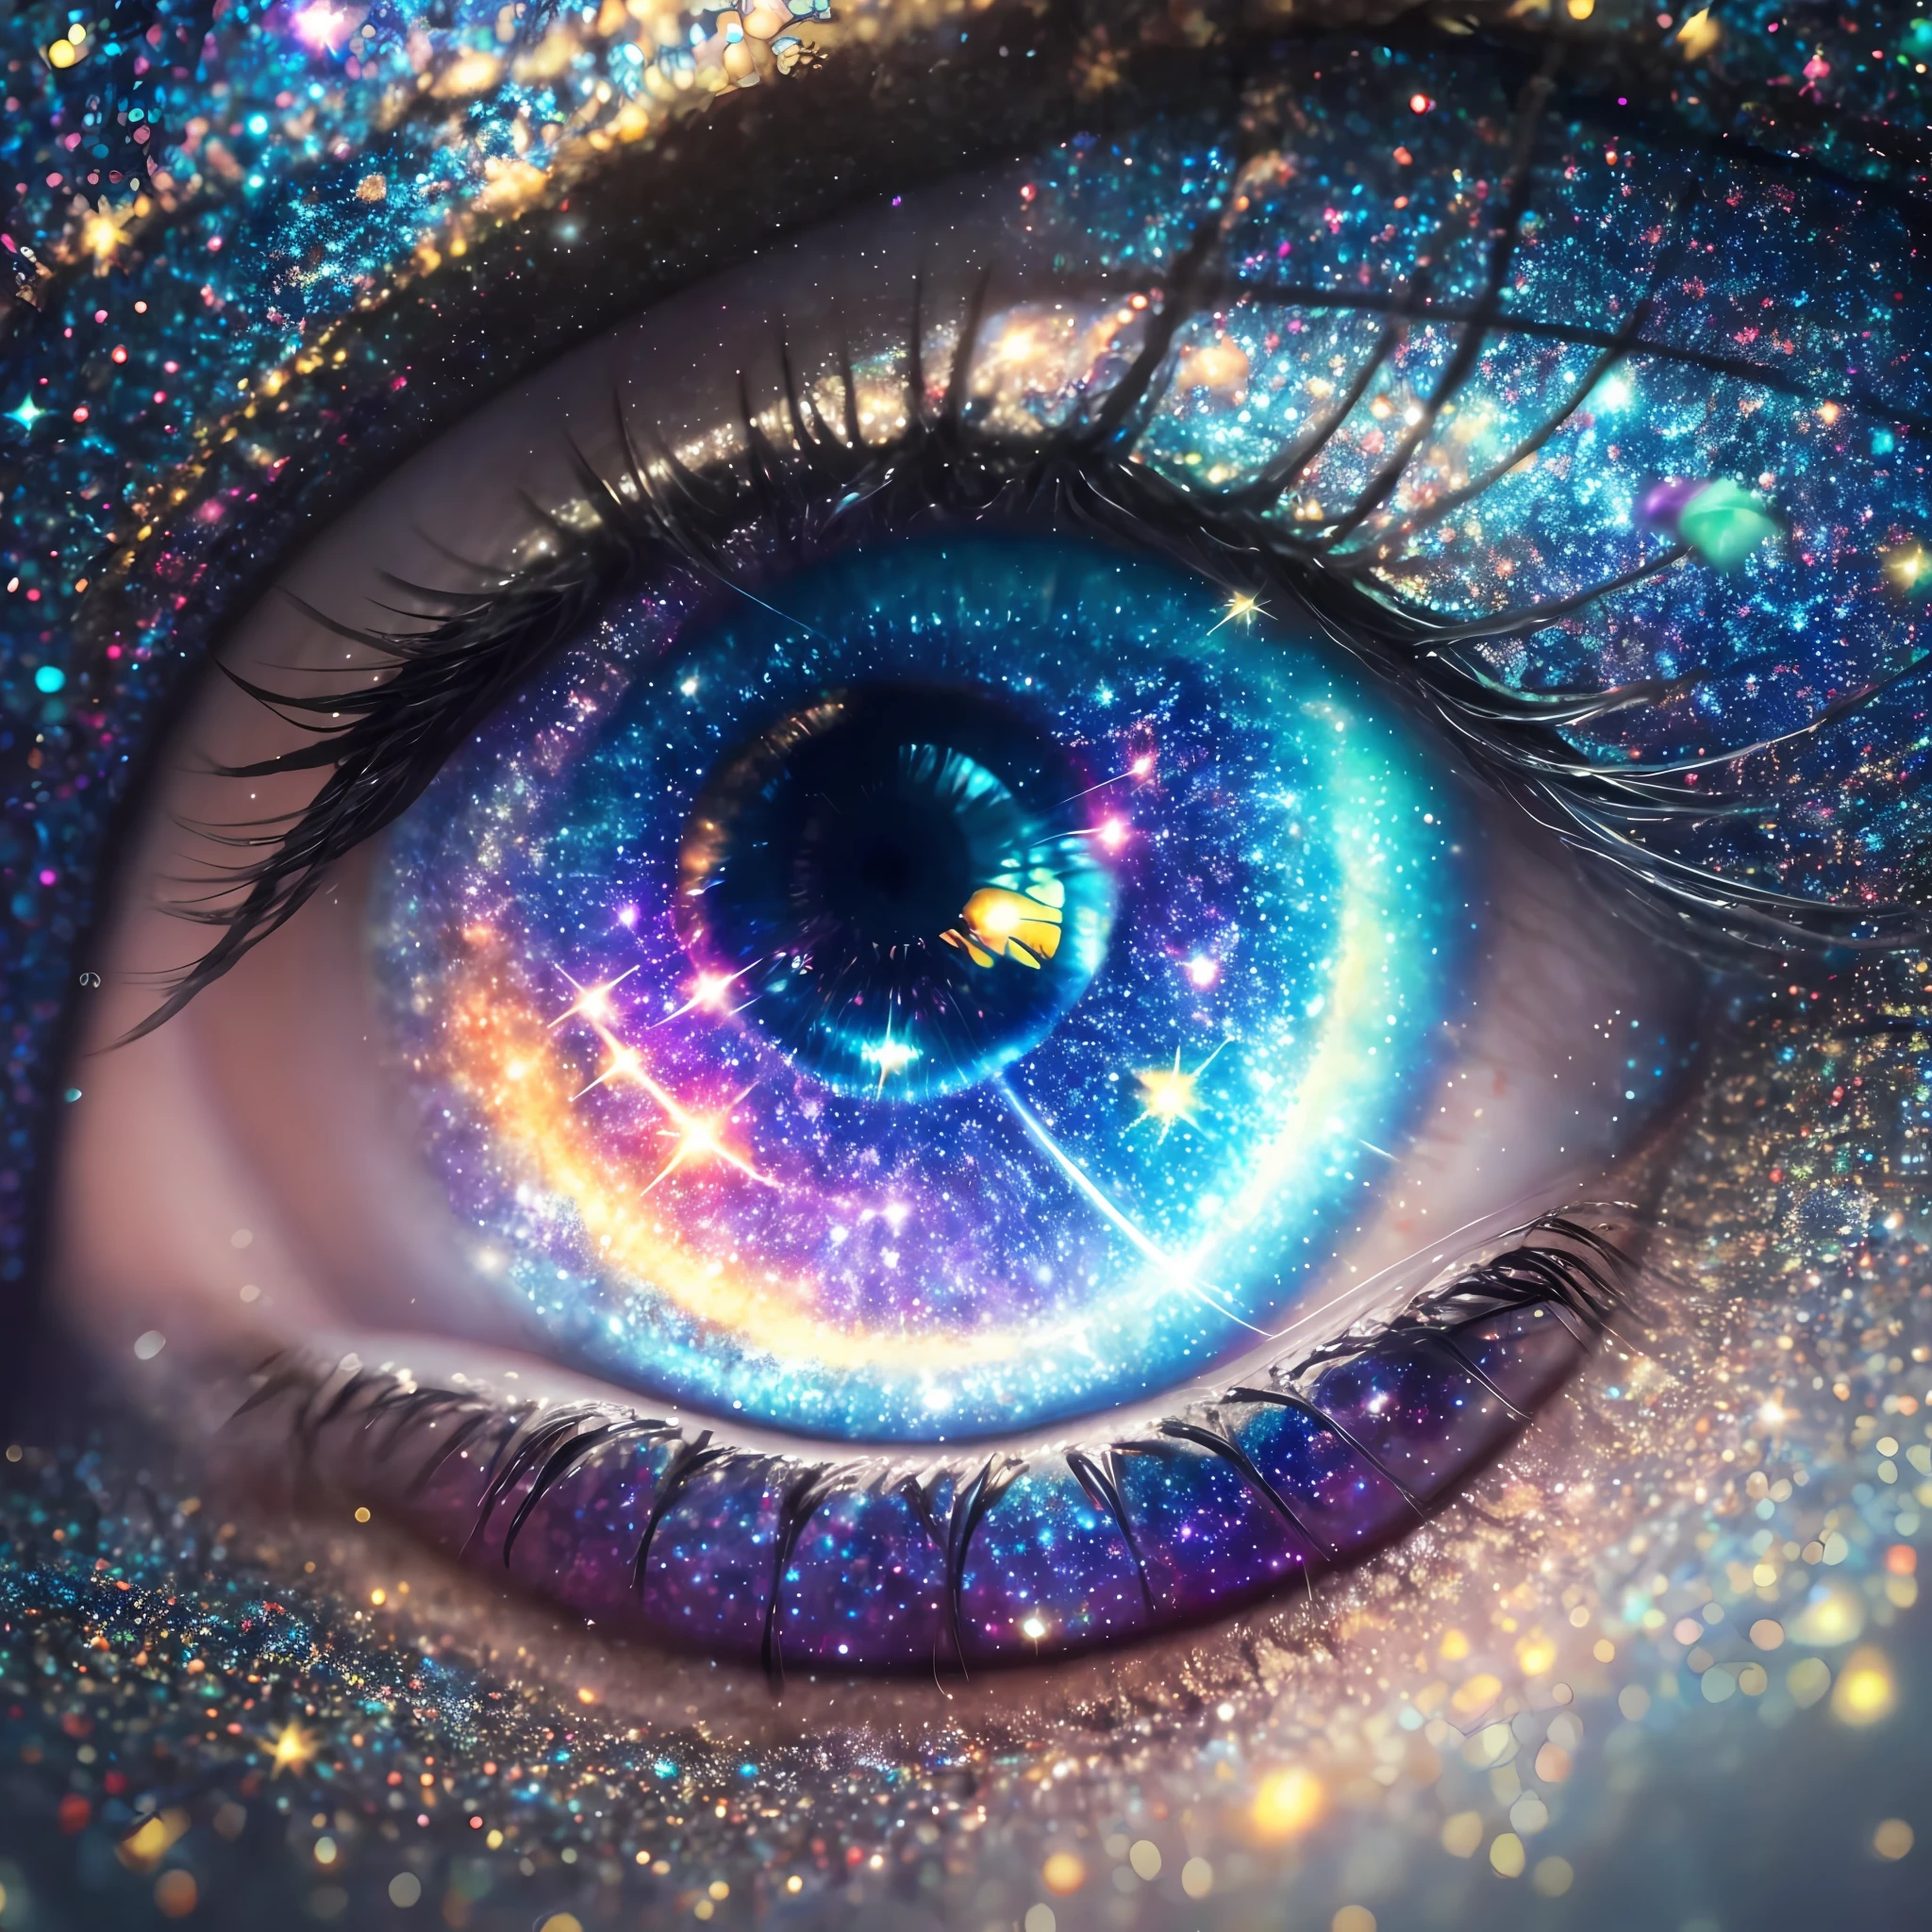 人眼的特寫，背景是星系, 眼中的銀河, 宇宙之眼, galaxy in the eye 👁️, 星星隱藏在眼睛裡, 銀河眼, 眺望宇宙, beautiful glowing 銀河眼, 星星當眼睛, 引導第三隻眼能量, 神奇的眼睛, 我們深入虛擬宇宙